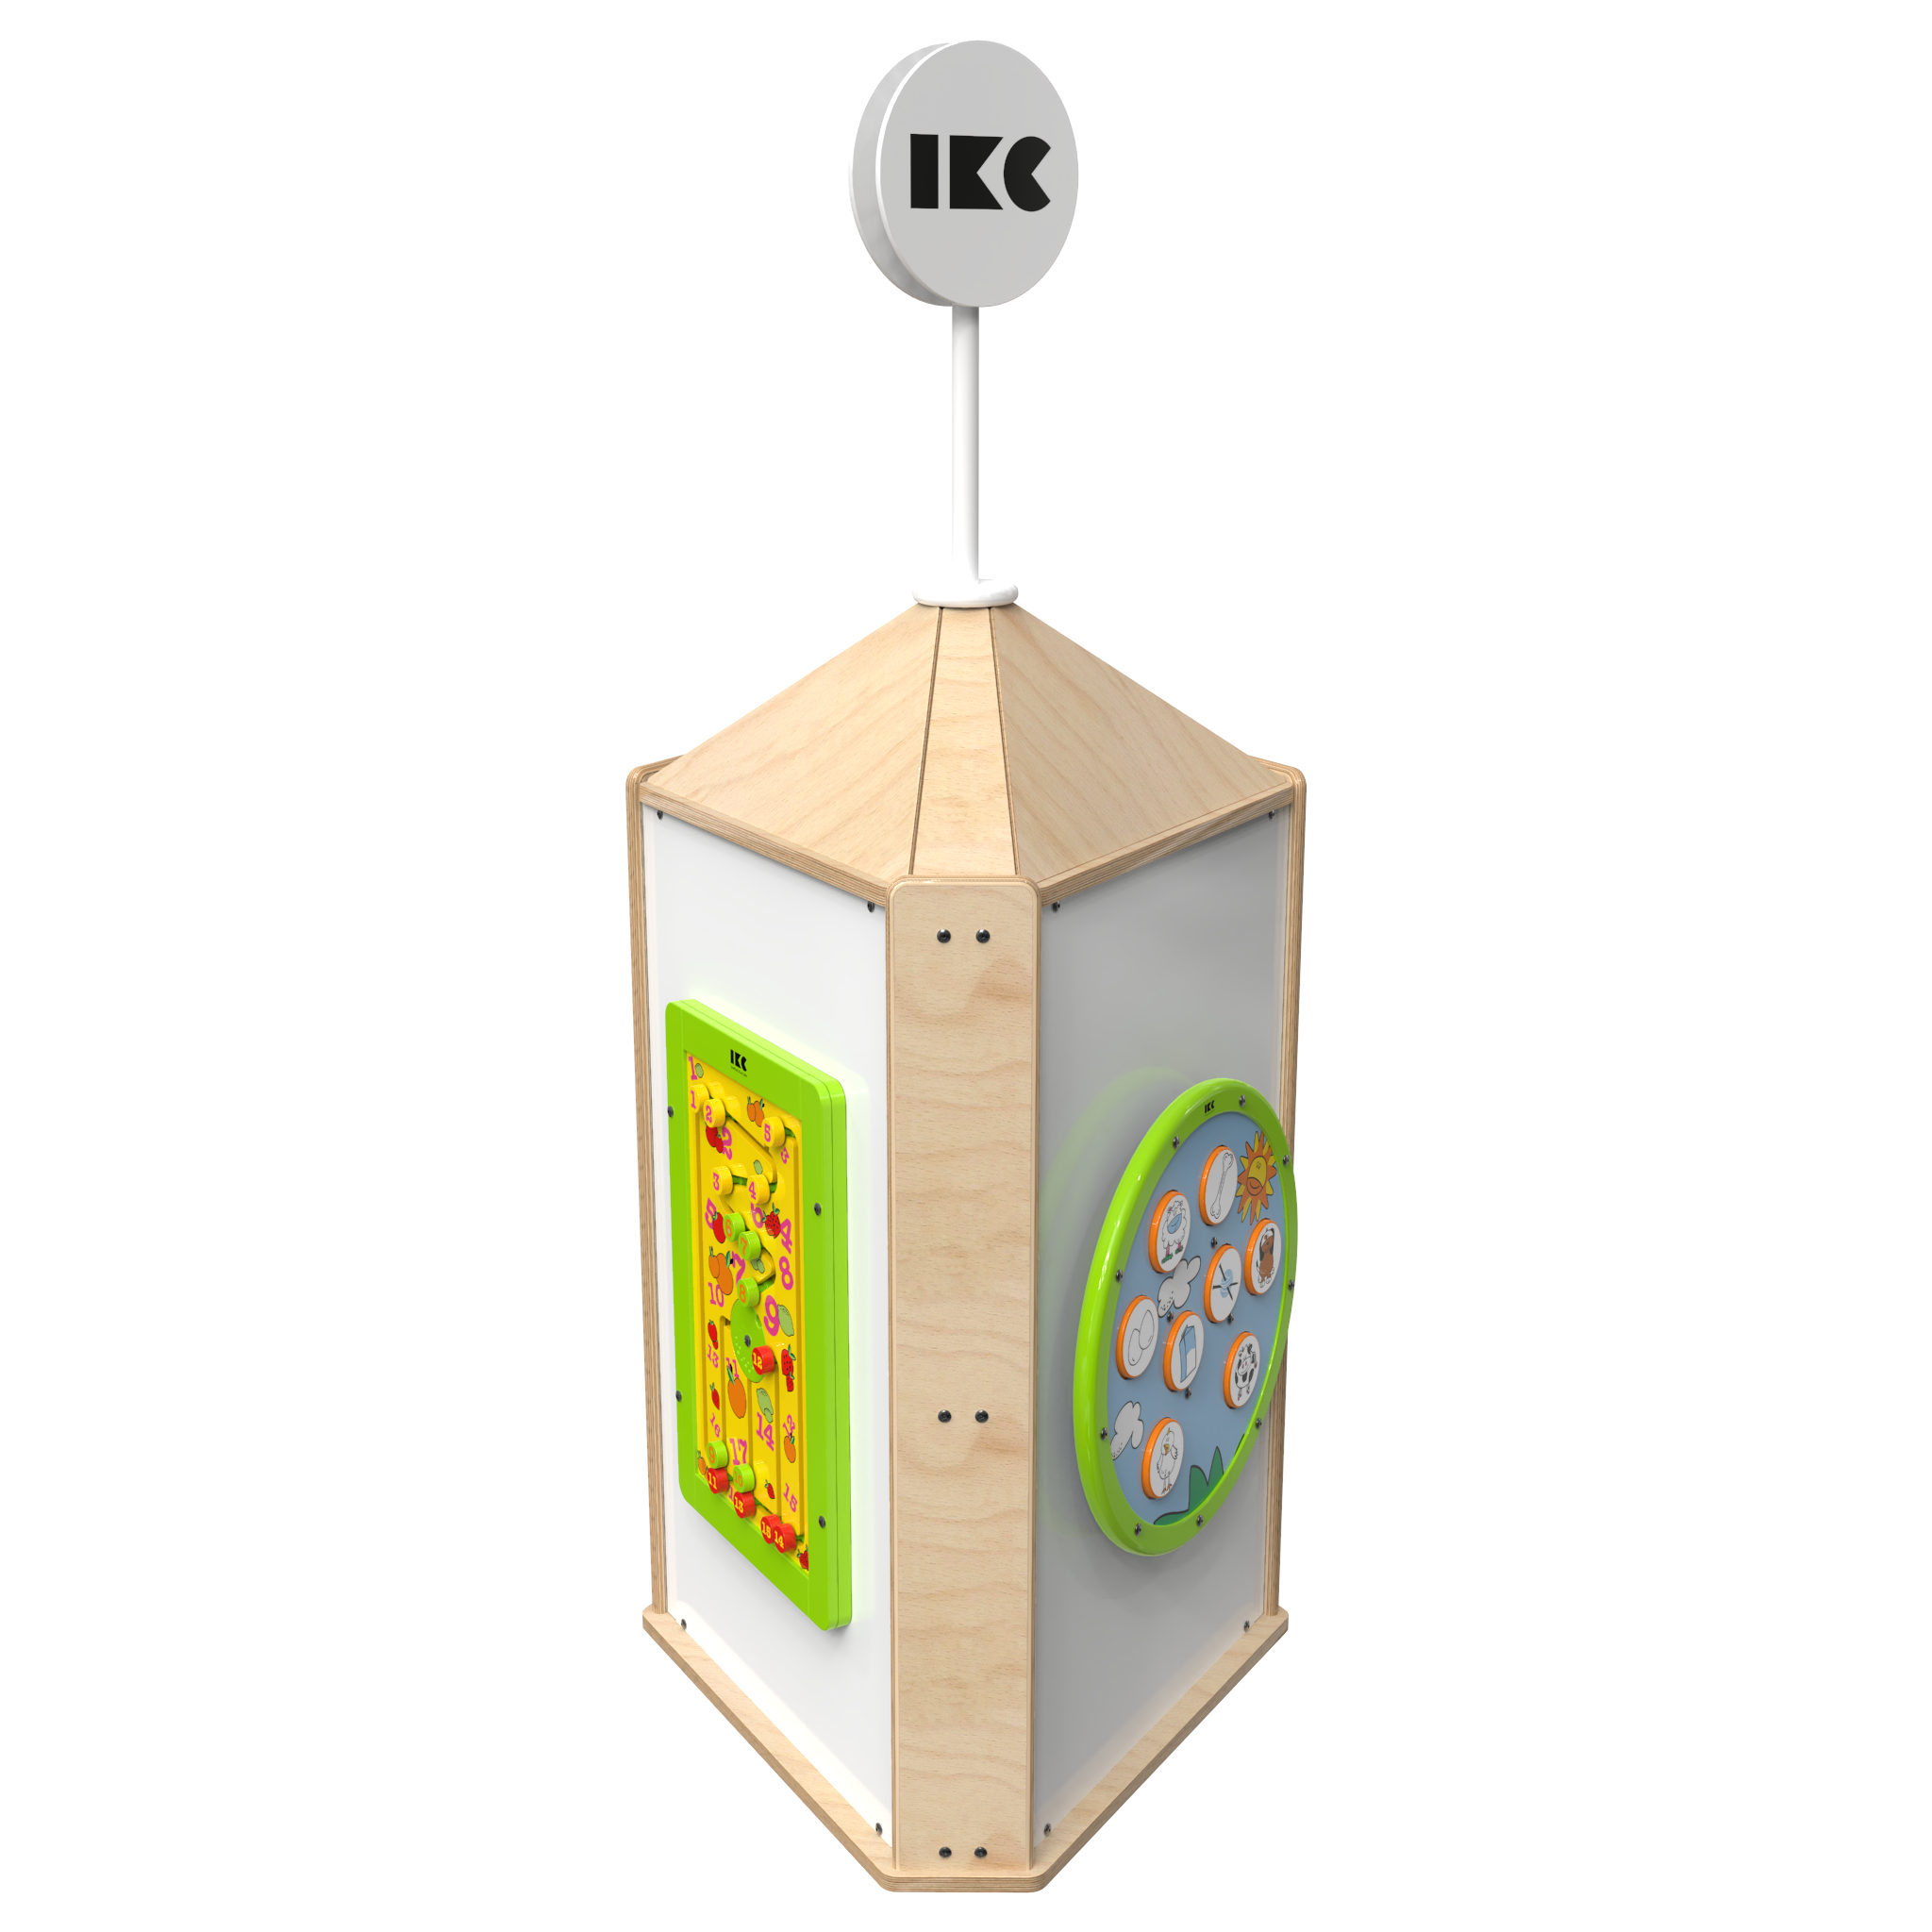 Esta imagen muestra un sistema de juego interactivo Playtower touch wood